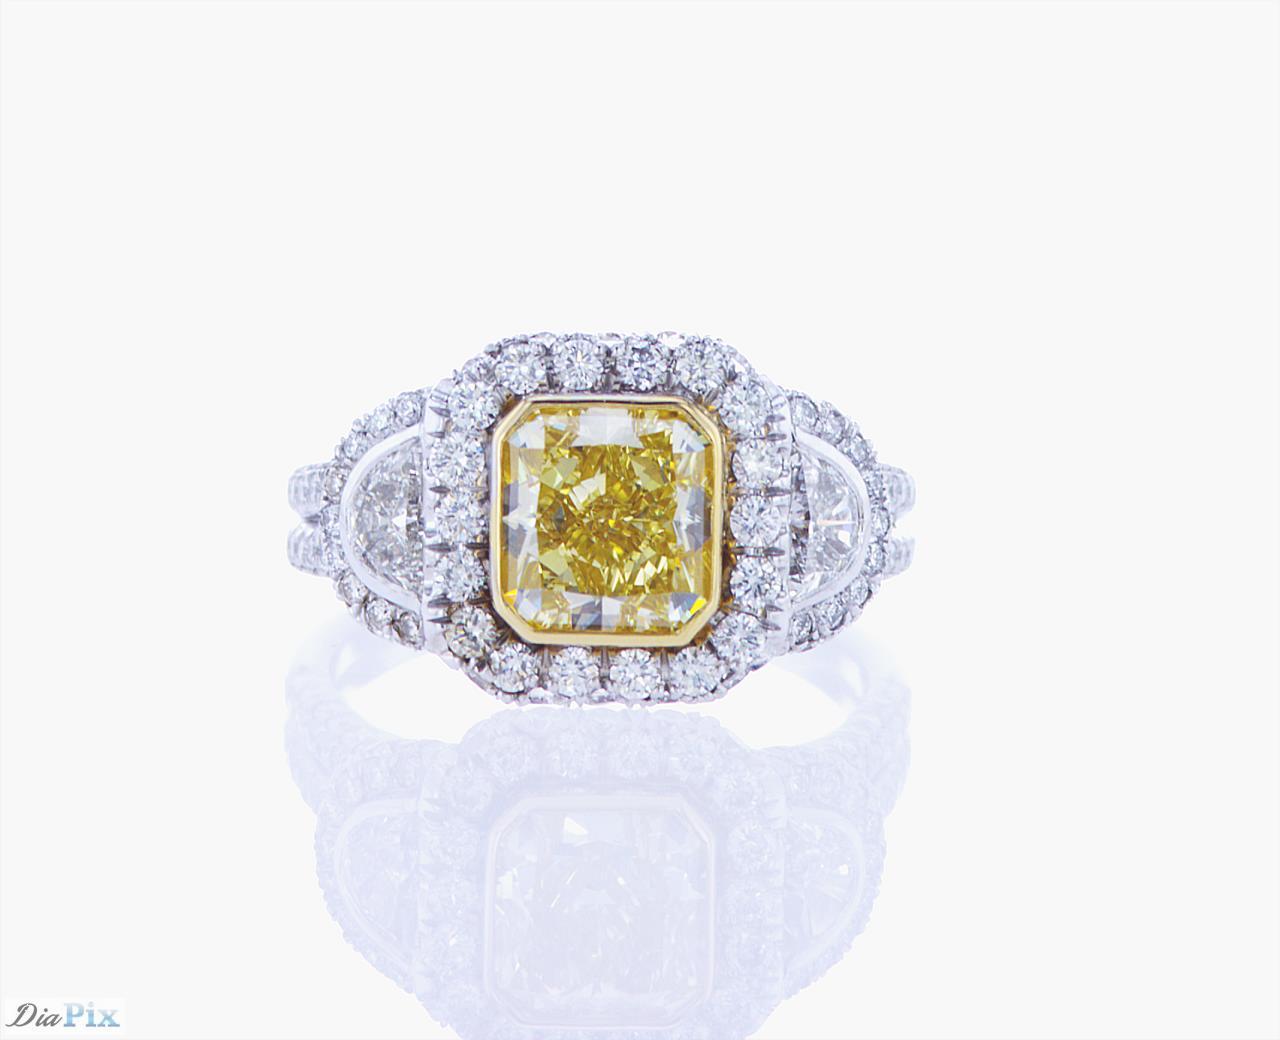 Modifizierter gelber Brillantring mit 1,91ct Schliff, GIA-Zertifikat # 5111396659 mit 0,40ct Gesamtgewicht an Halbmond-Diamanten und 0,96ct Gesamtgewicht an  Runde Brillanten in einer Platinfassung mit einer Lünette aus 18k Gelbgold.
